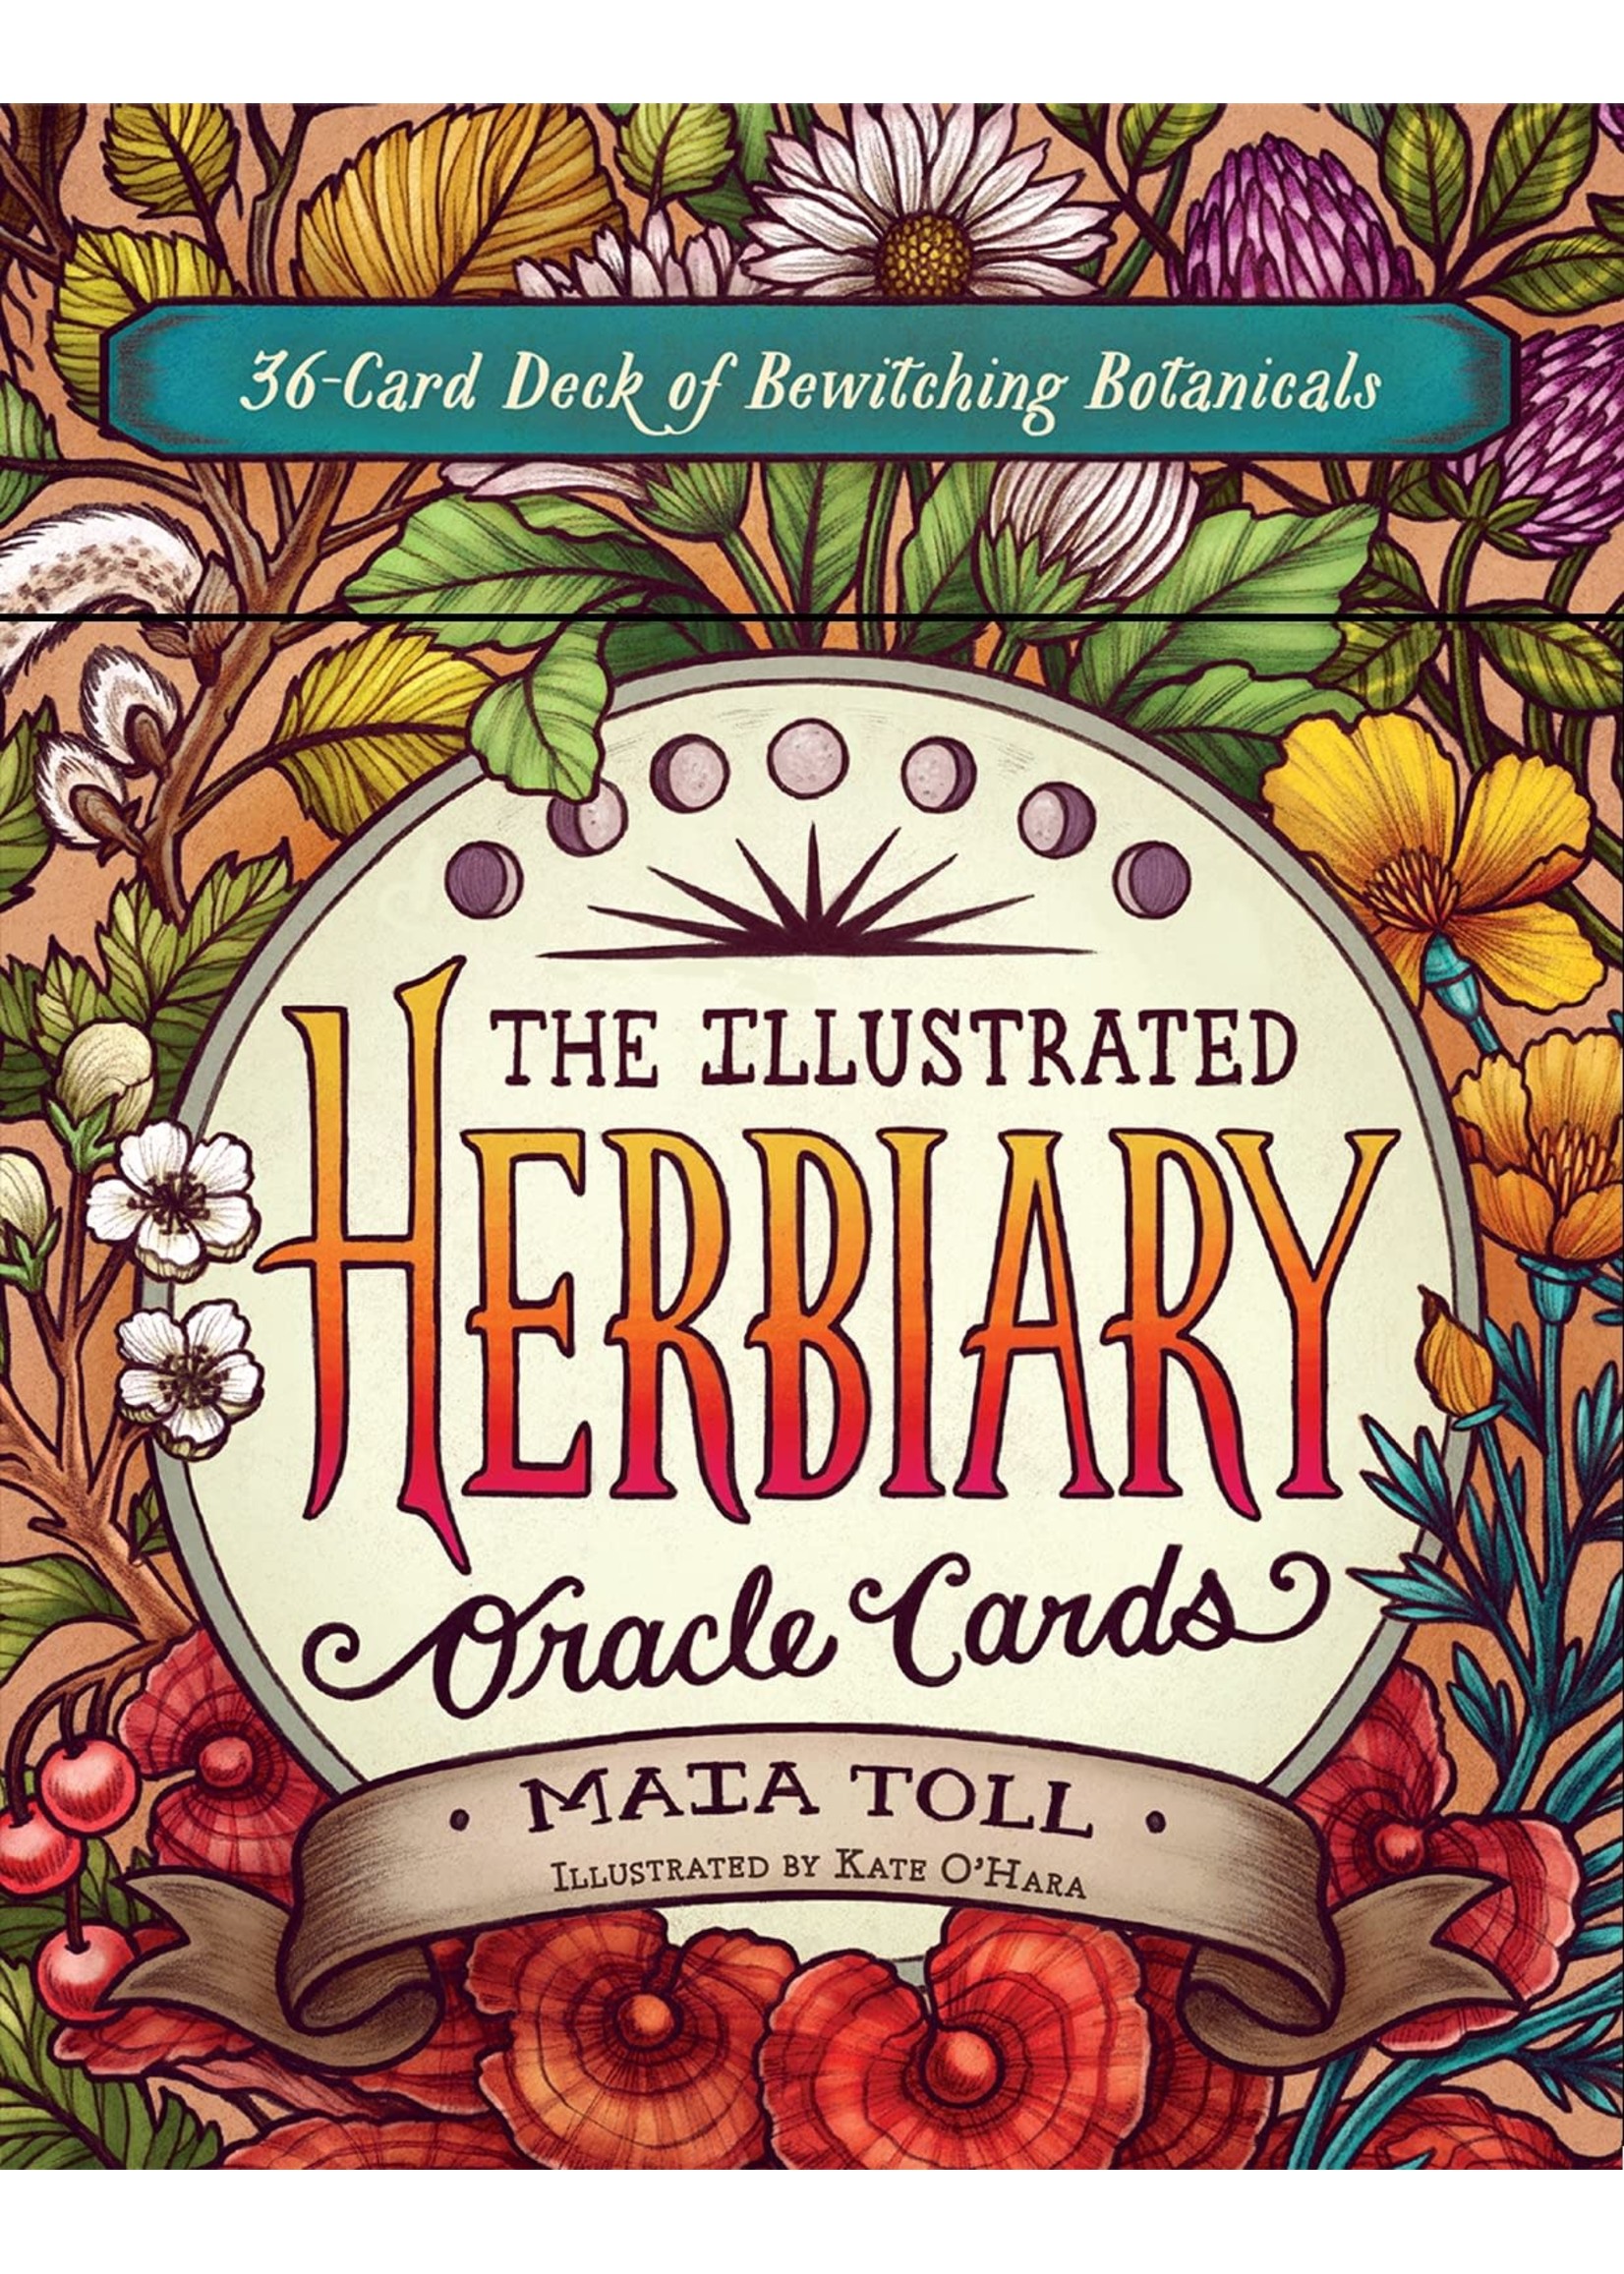 Deck Herbiary Oracle